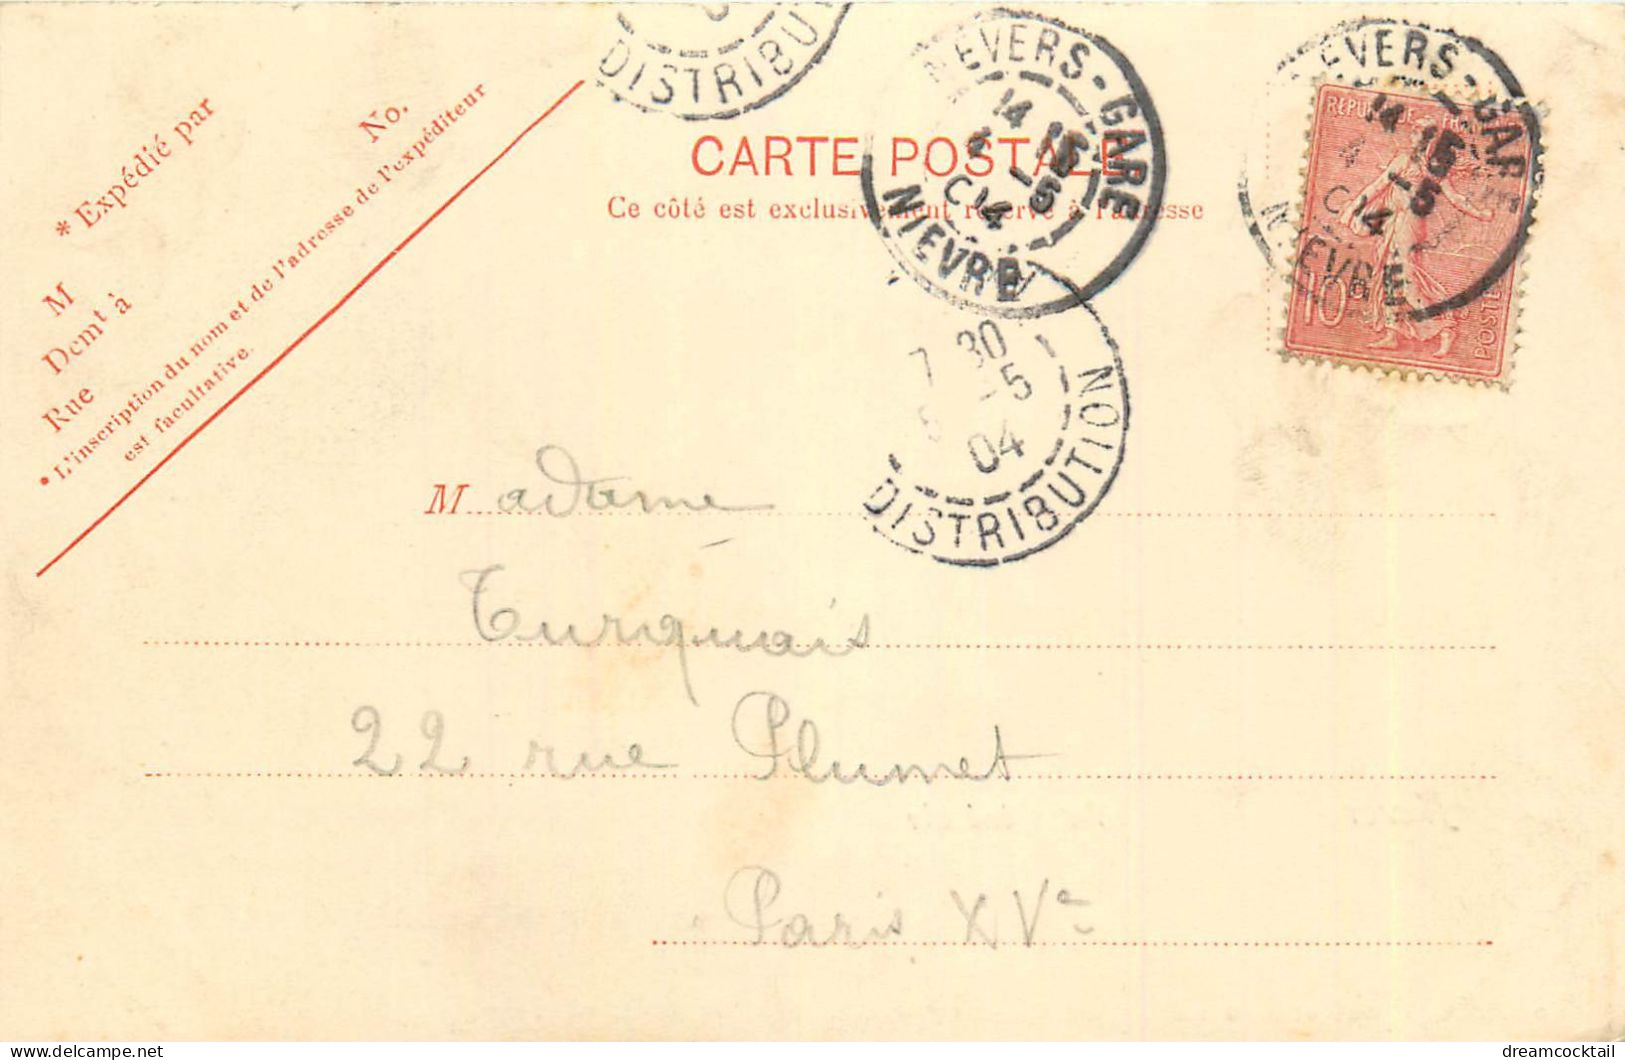 (S) Superbe LOT n°9 de 50 cartes postales anciennes France régionalisme